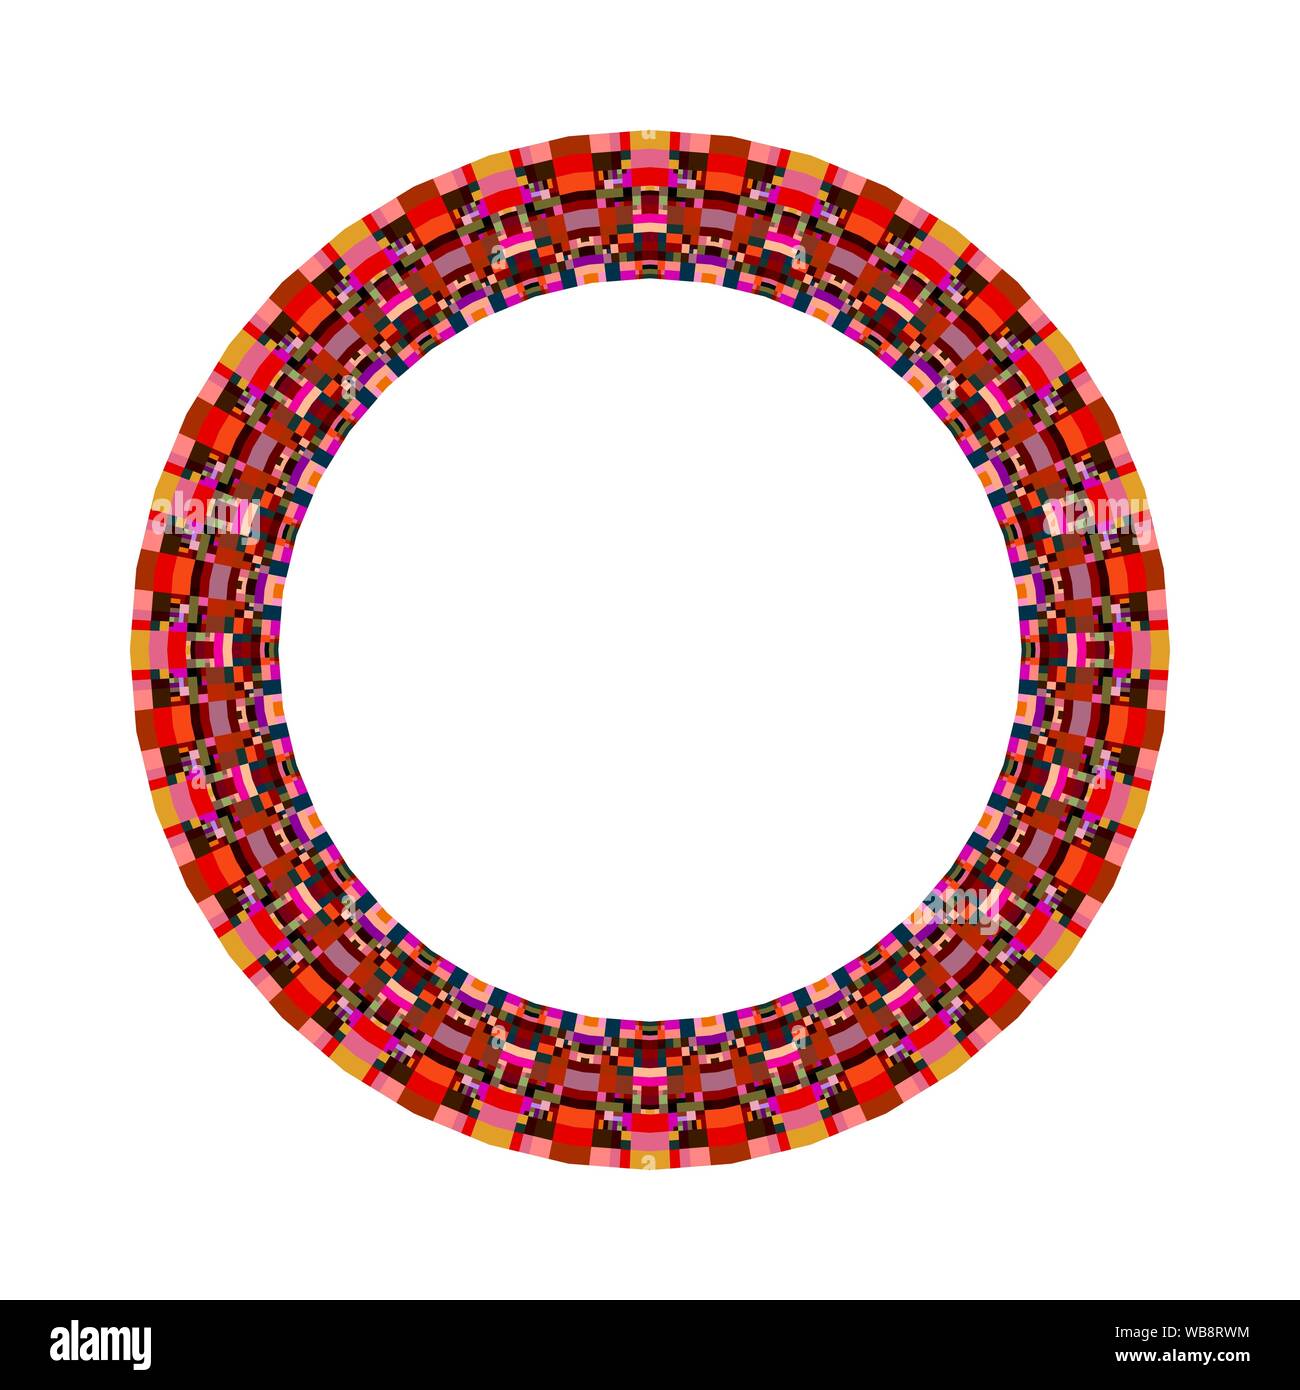 Isolierte Mosaikfliesen Wreath - Dekorative bunte runde vektor design Element mit geometrischen Formen Stock Vektor